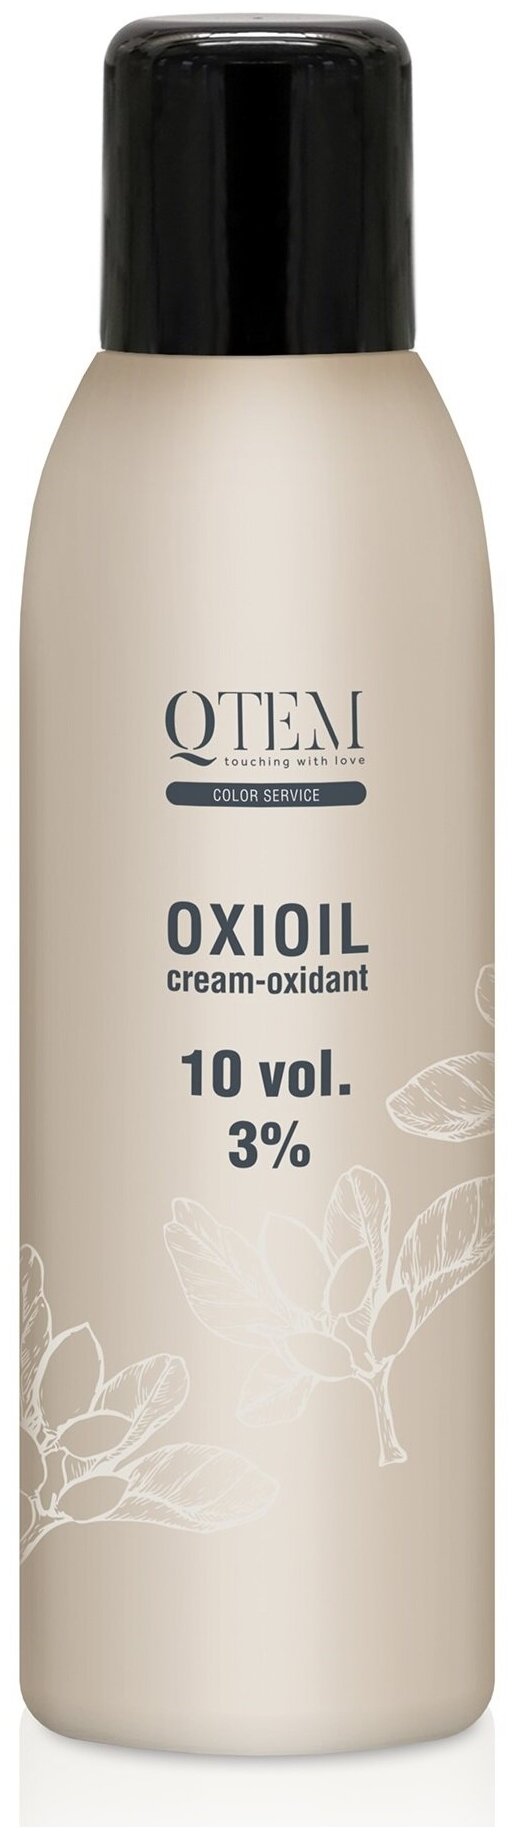 Qtem Универсальный крем-оксидант Oxioil 3% (10 Vol.), 1000 мл (Qtem, ) - фото №1